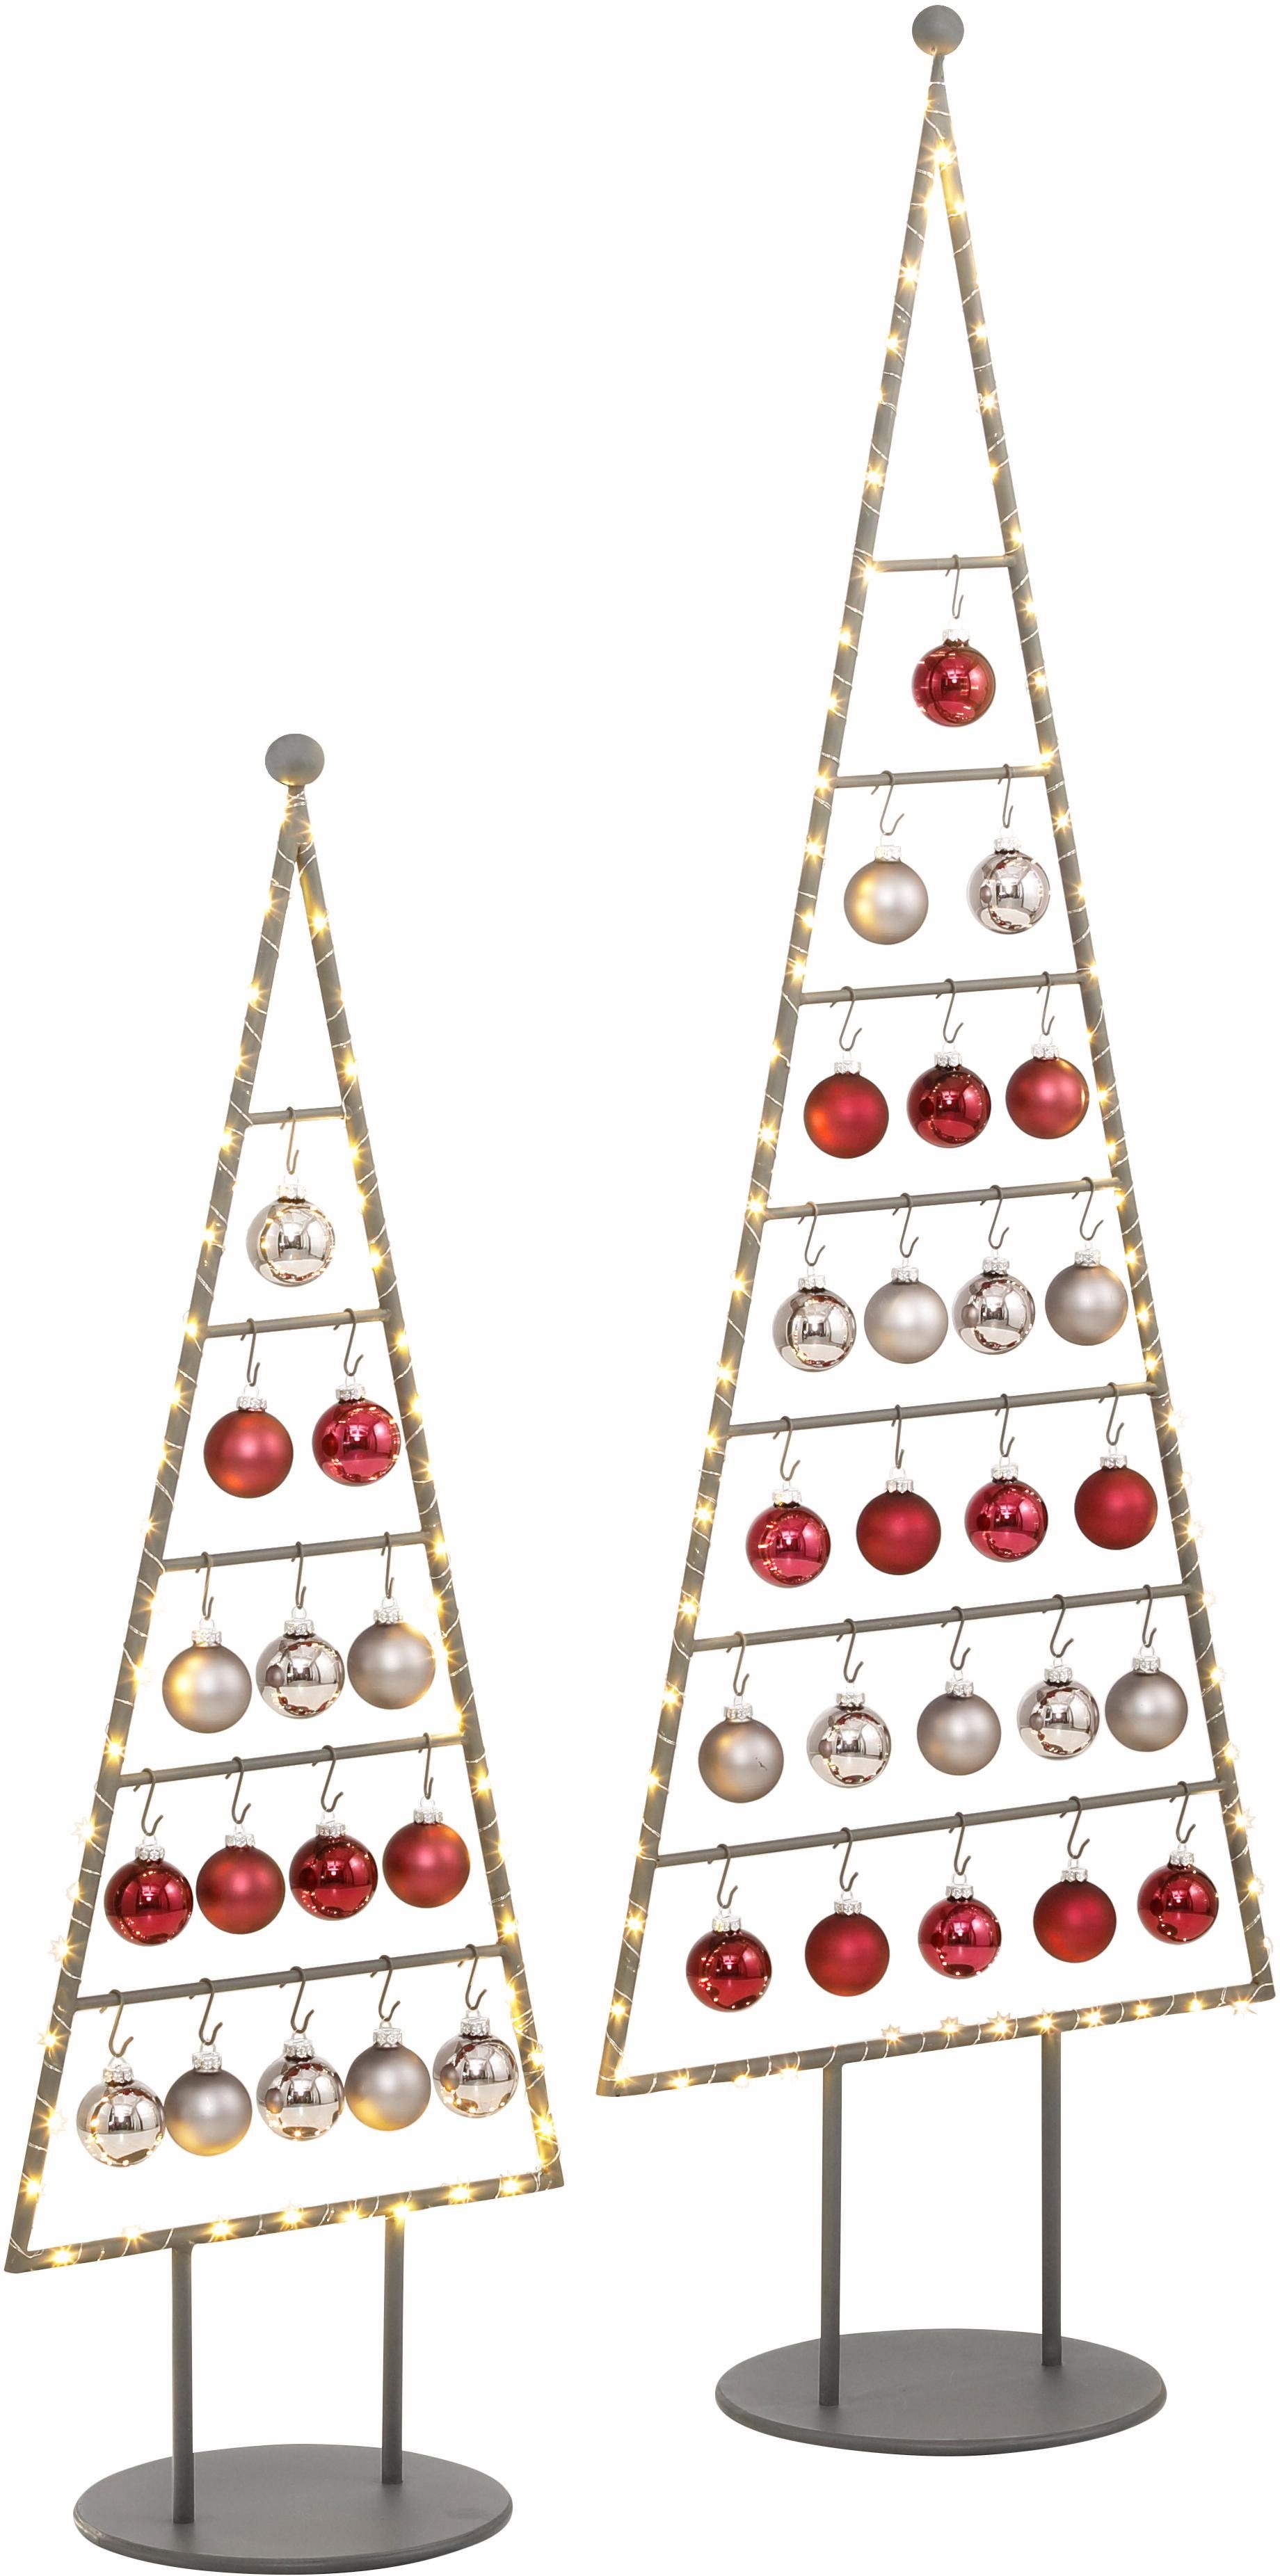 Otto - OTTO Kerstboom van metaal in verschillende afmetingen, incl. glazen ballen en micro-ledlichtsnoer